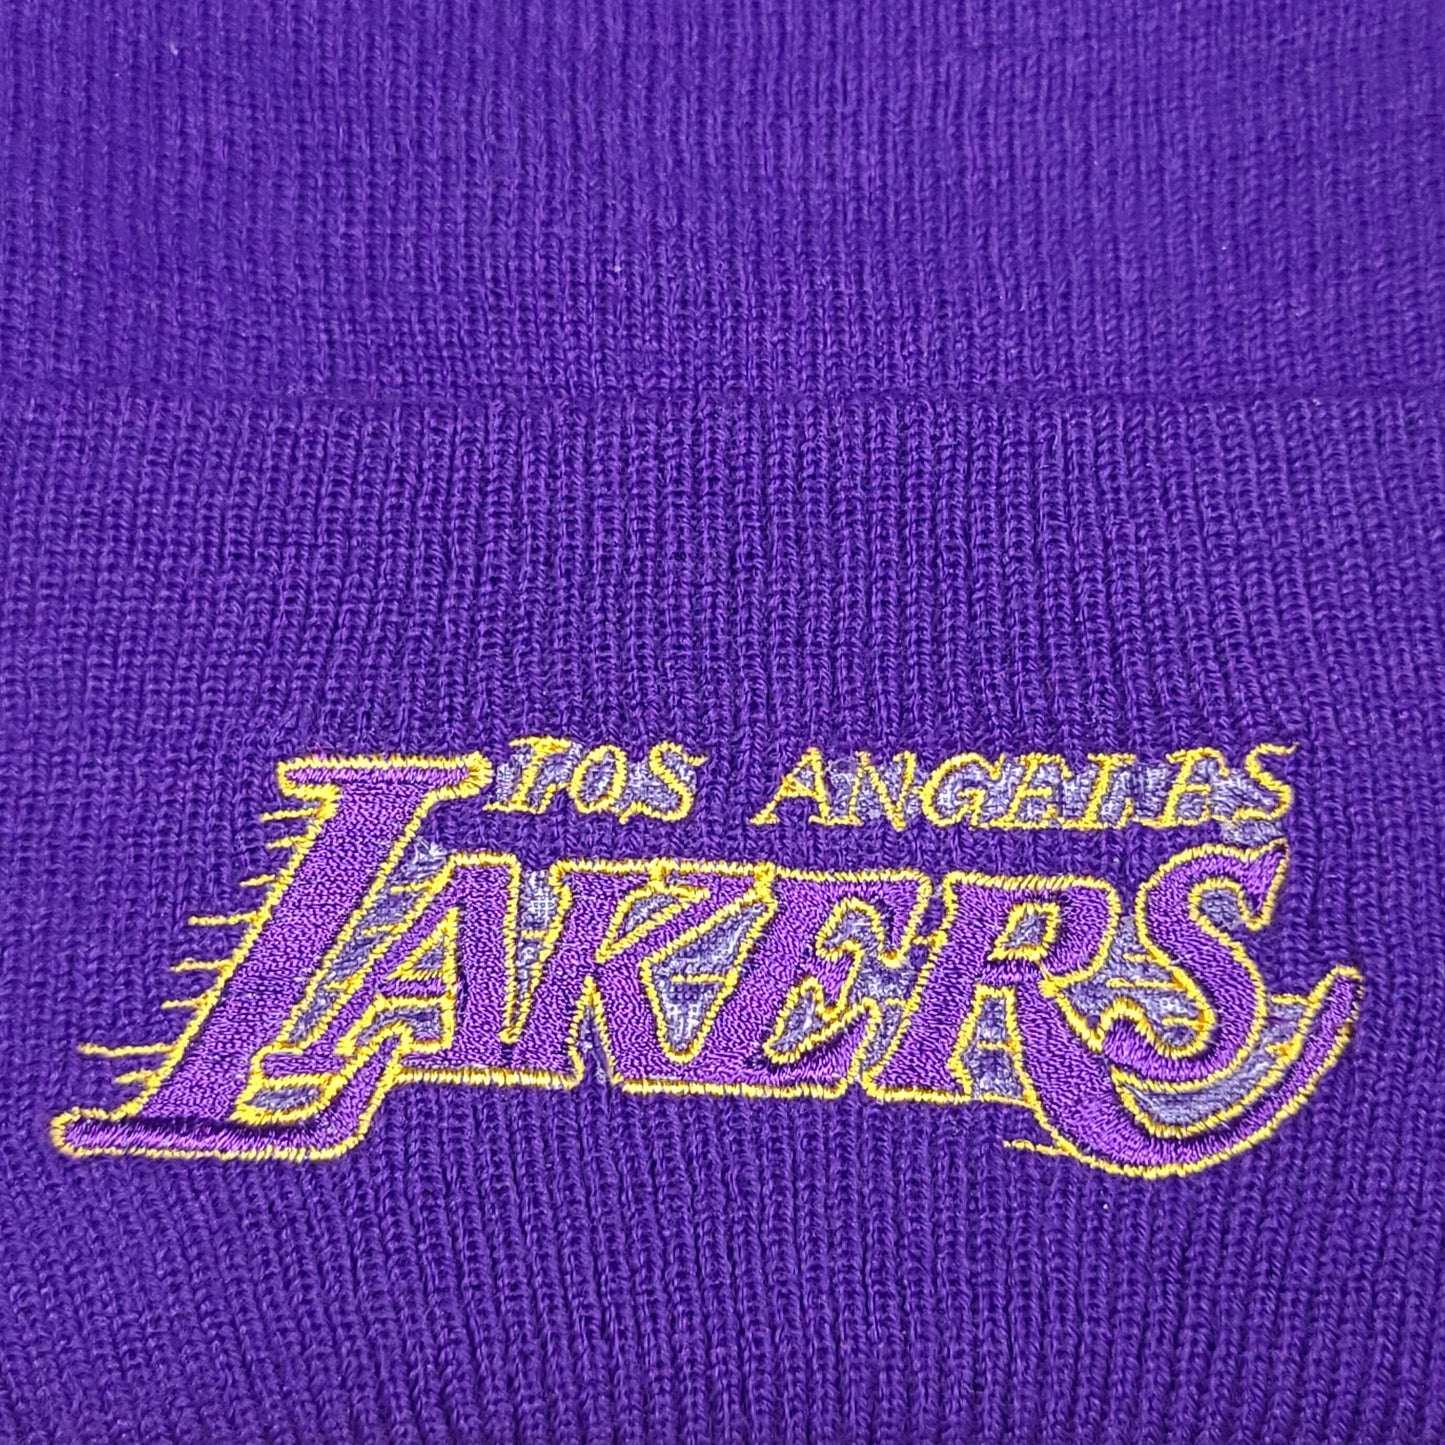 Vintage Los Angeles Lakers NBA Purple Beanie Hat